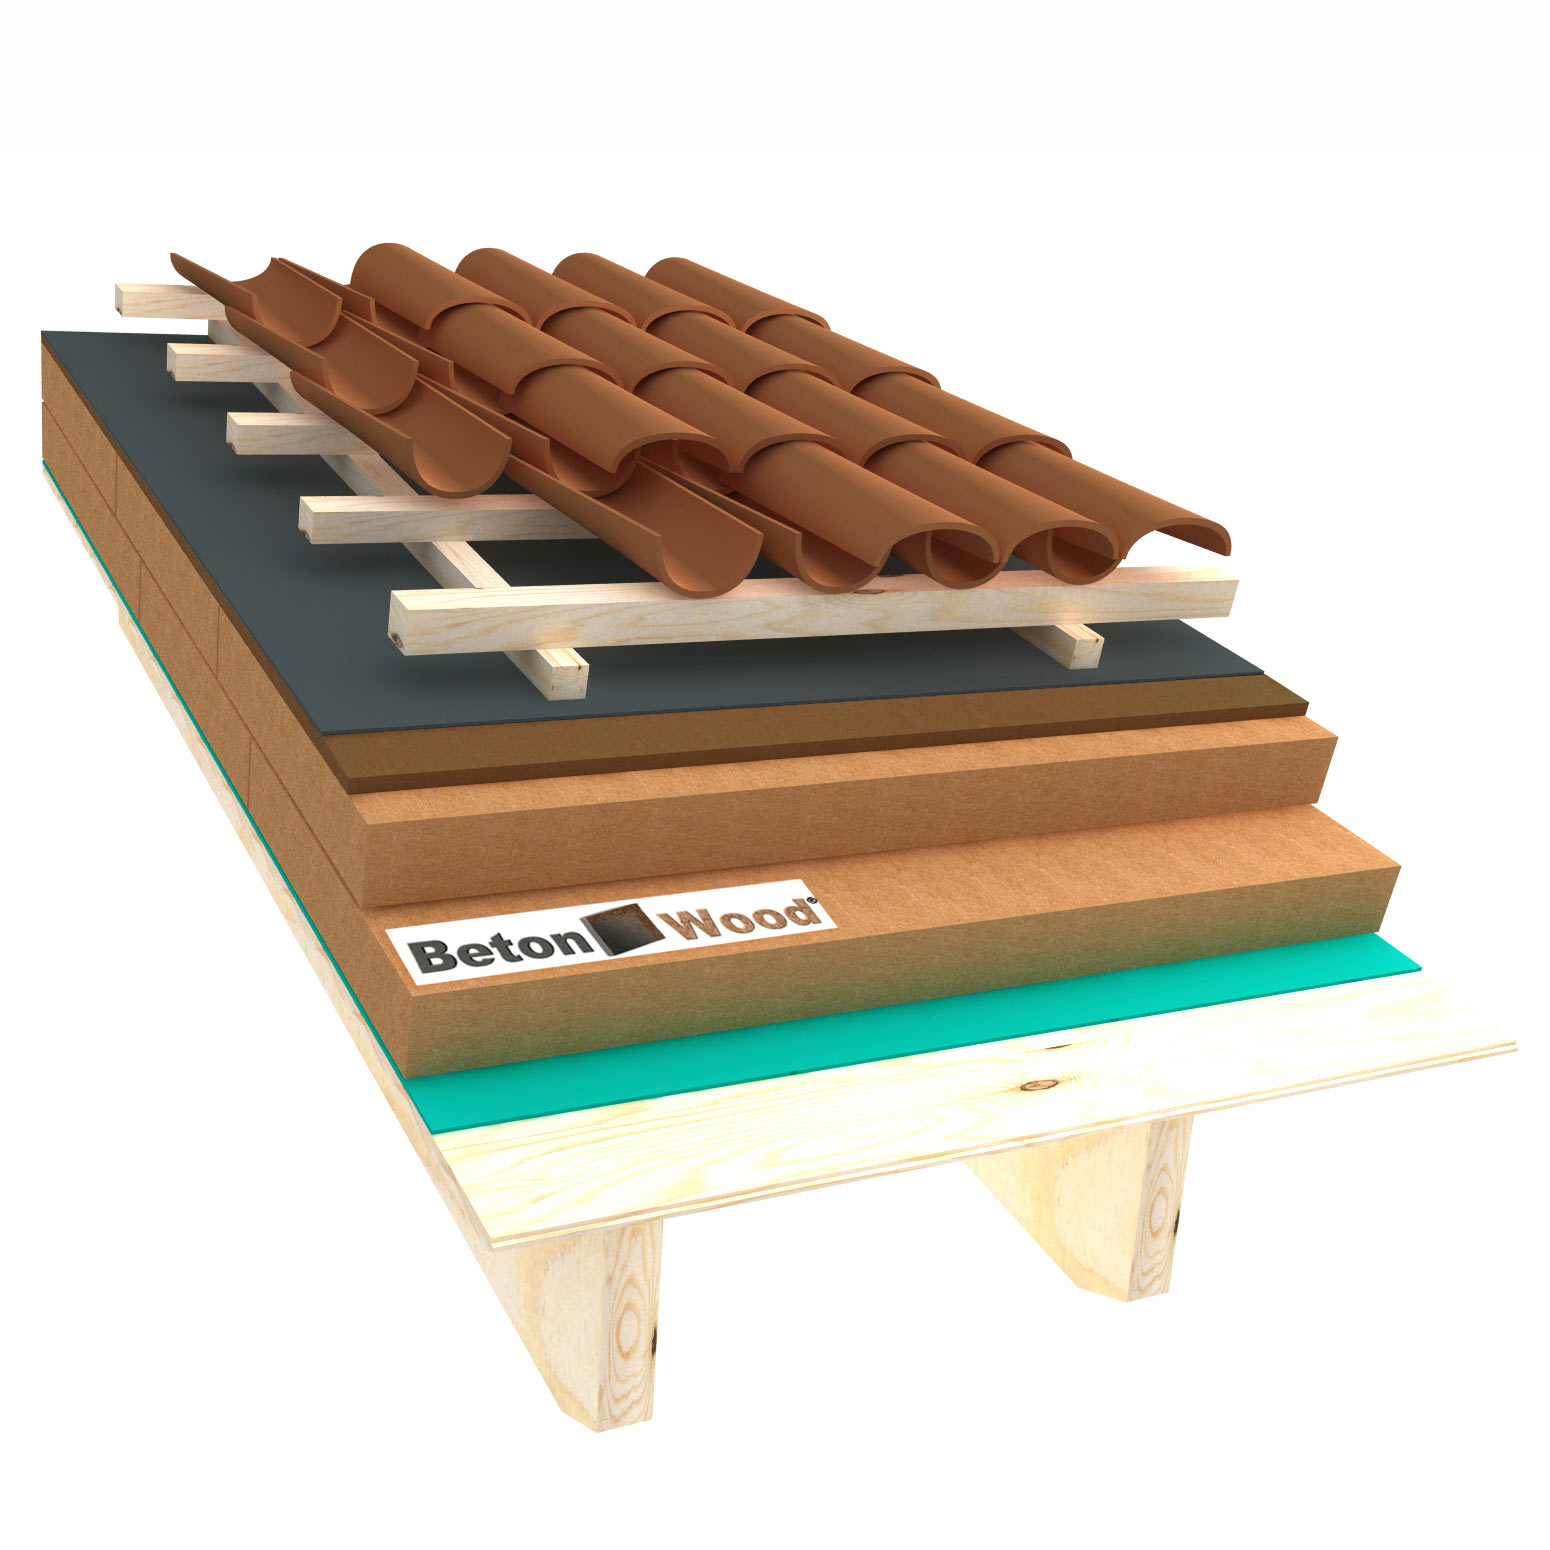 Sistema tetto B fibra di legno Therm ed Bitumfiber